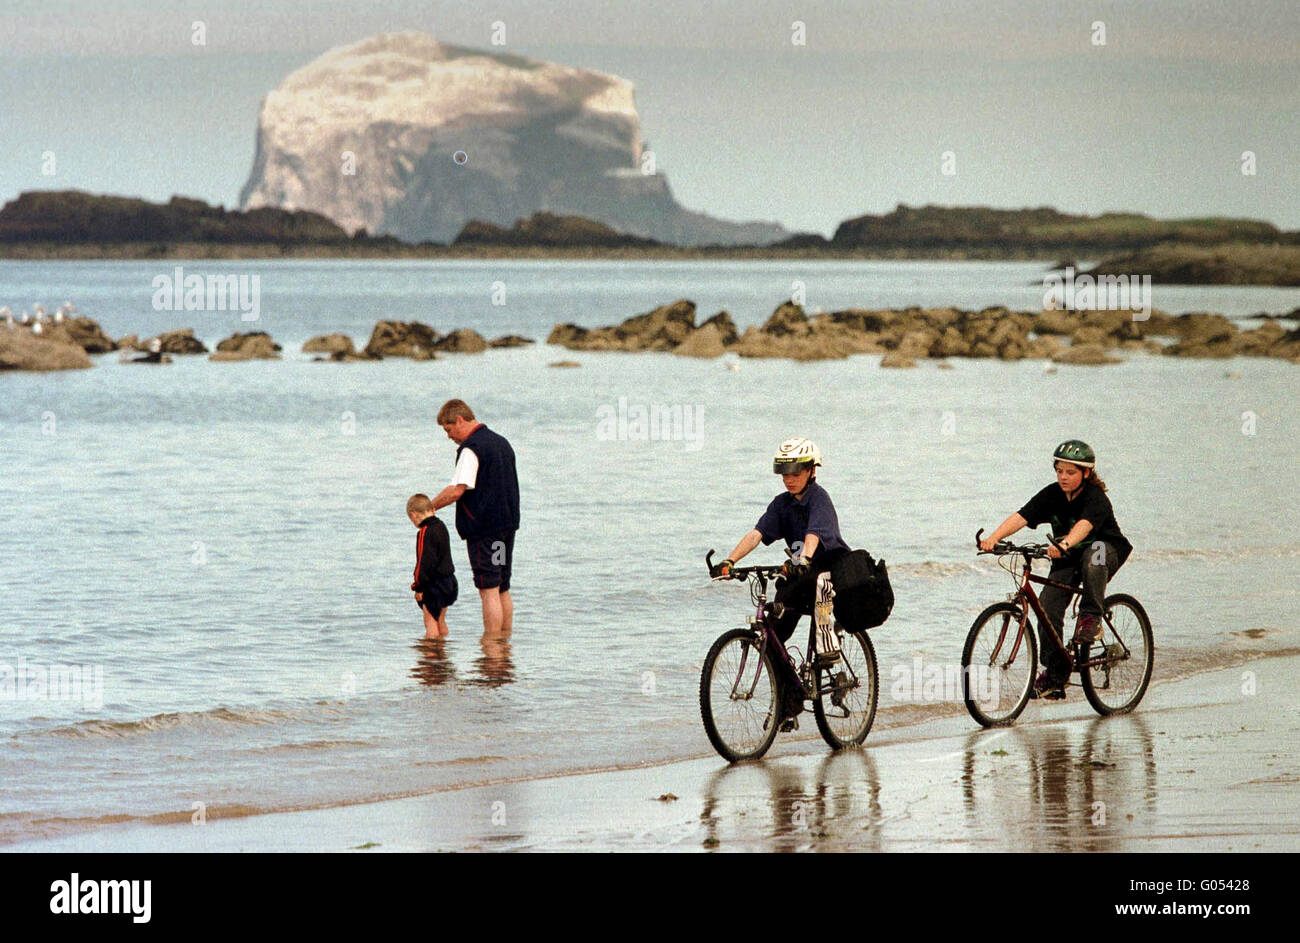 Les cyclistes sur plage, avec bass rock derrière. North Berwick, East Lothian, Scotland Banque D'Images